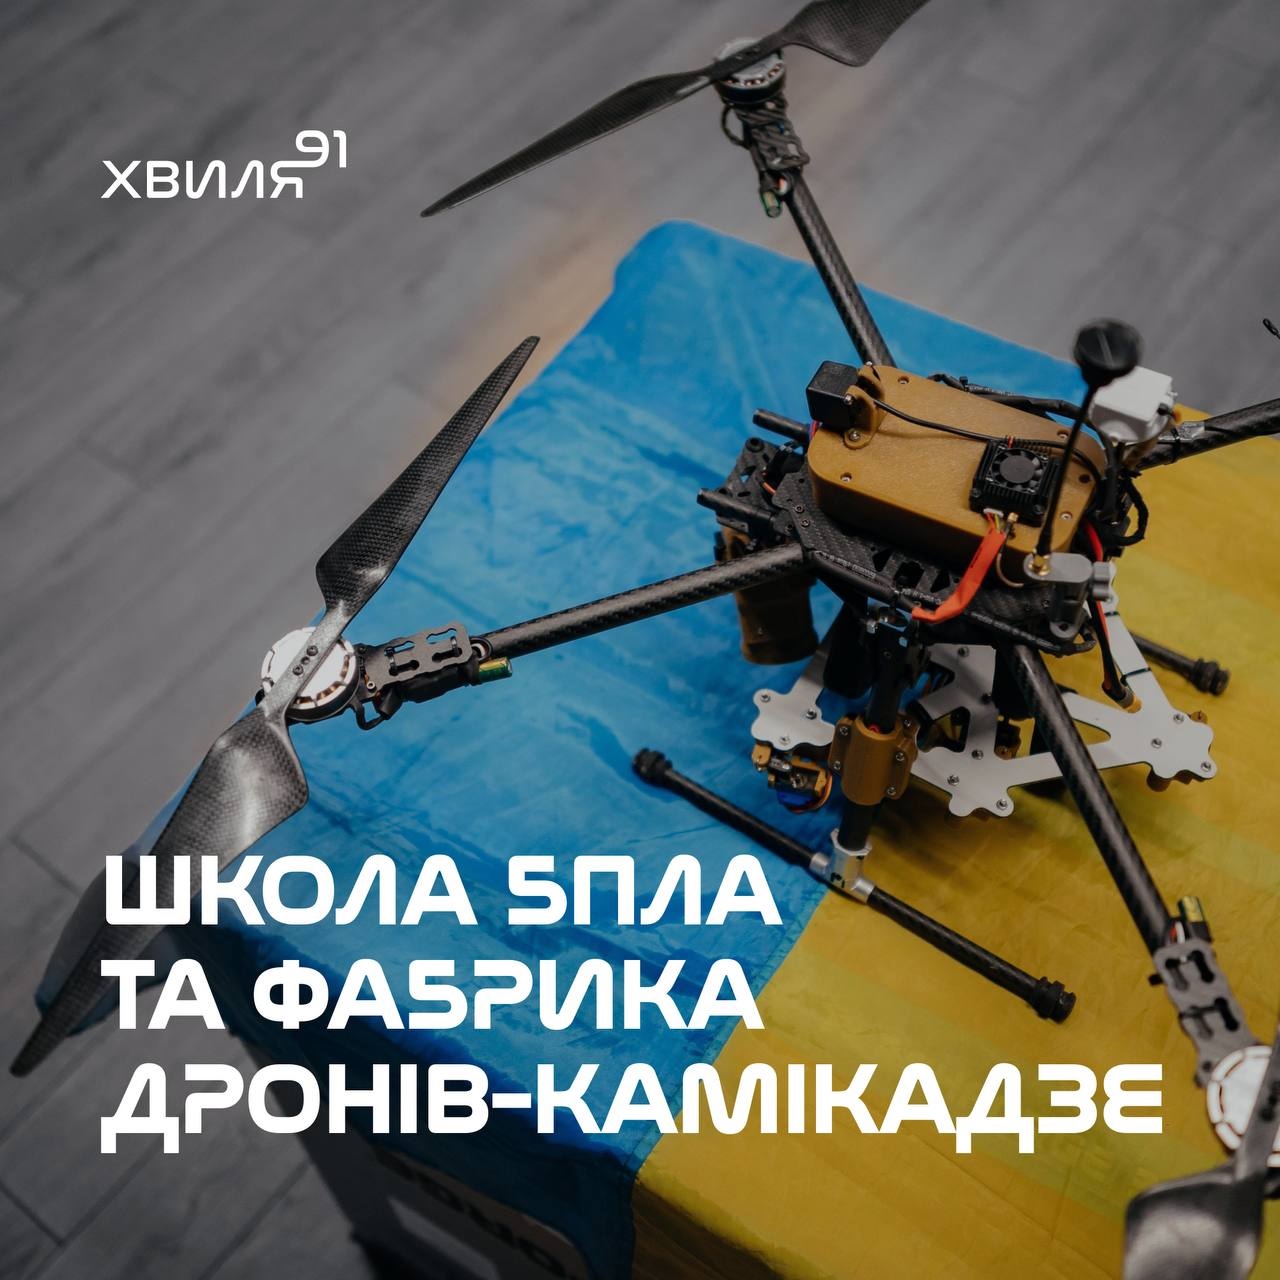 Український дрон-камікадзе